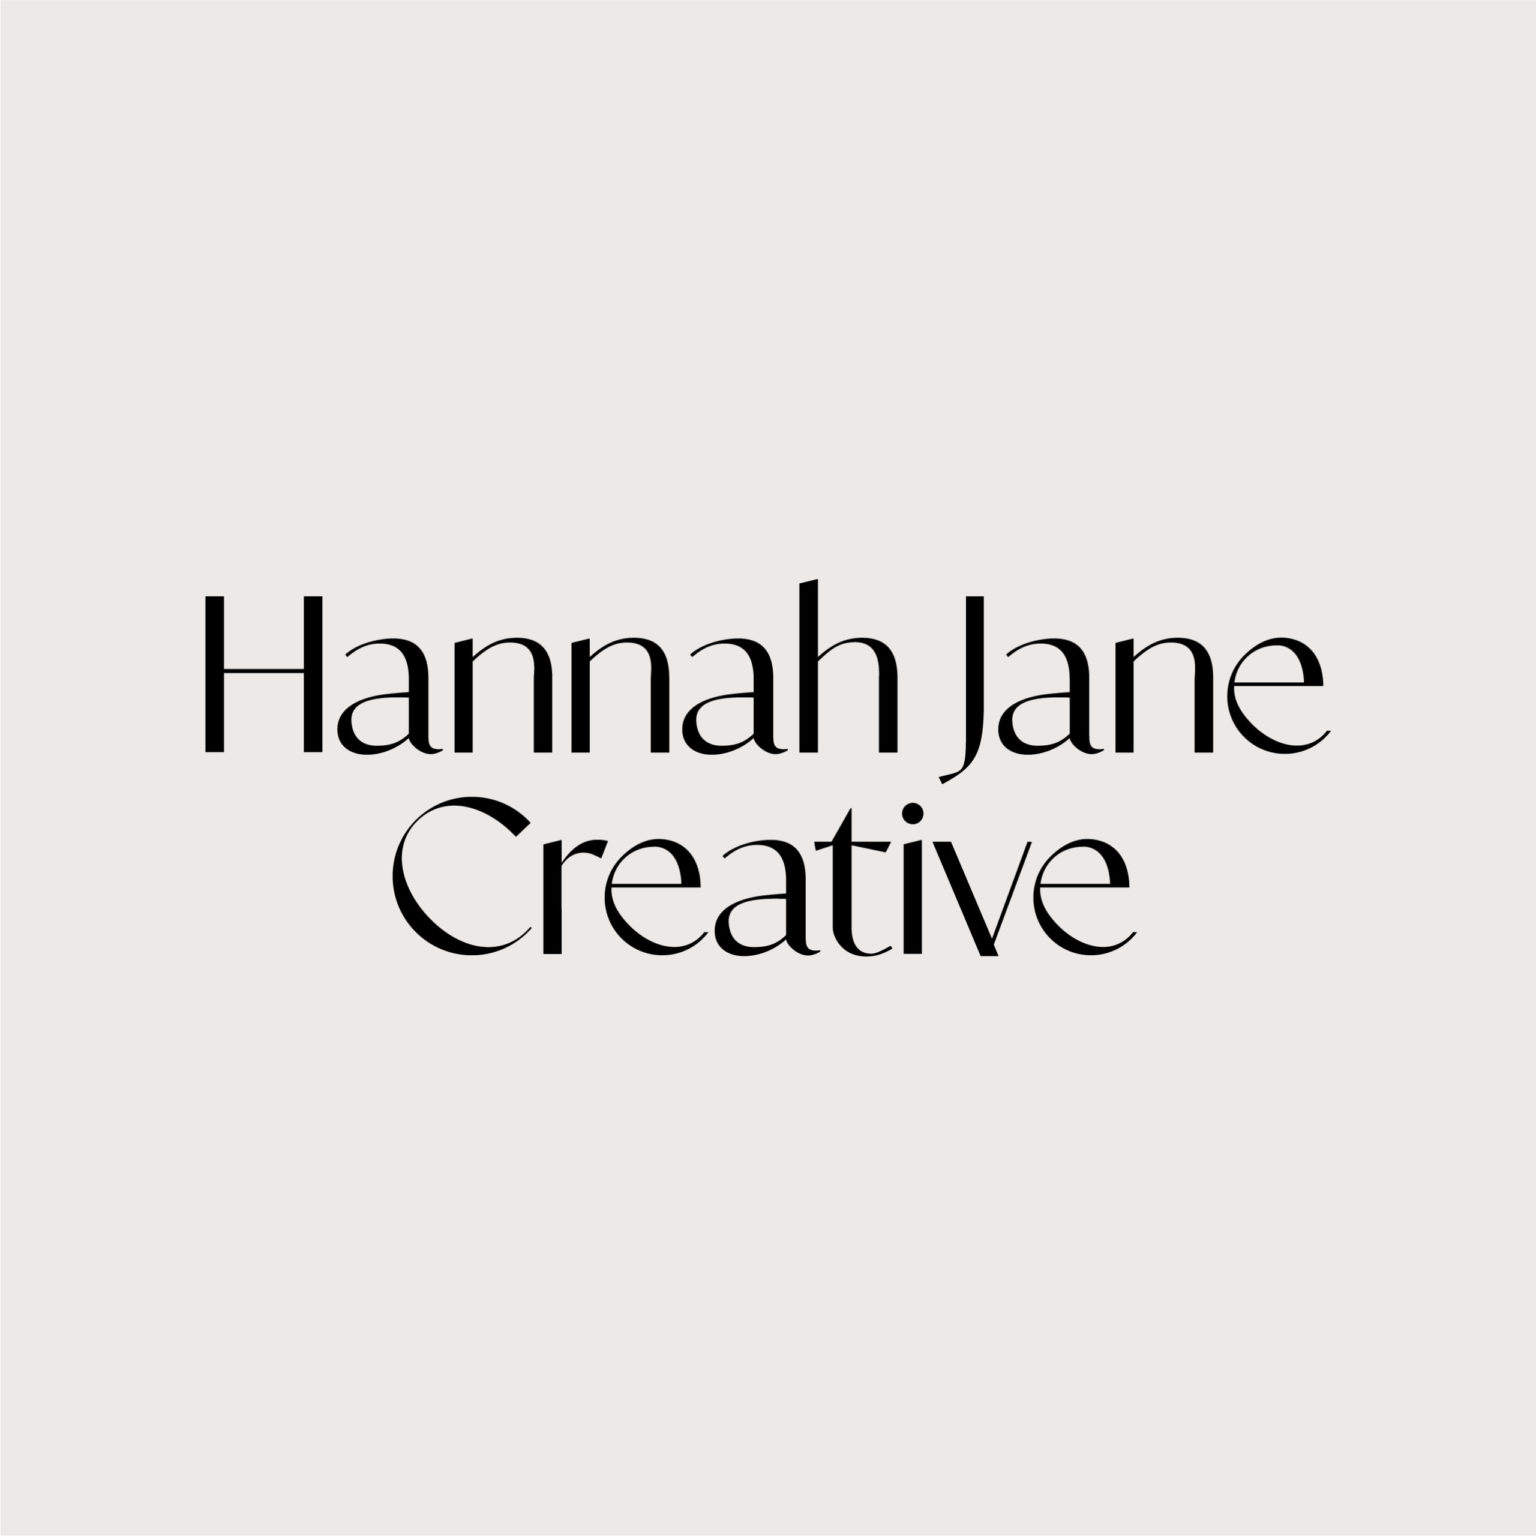 Hannah Jane Creative